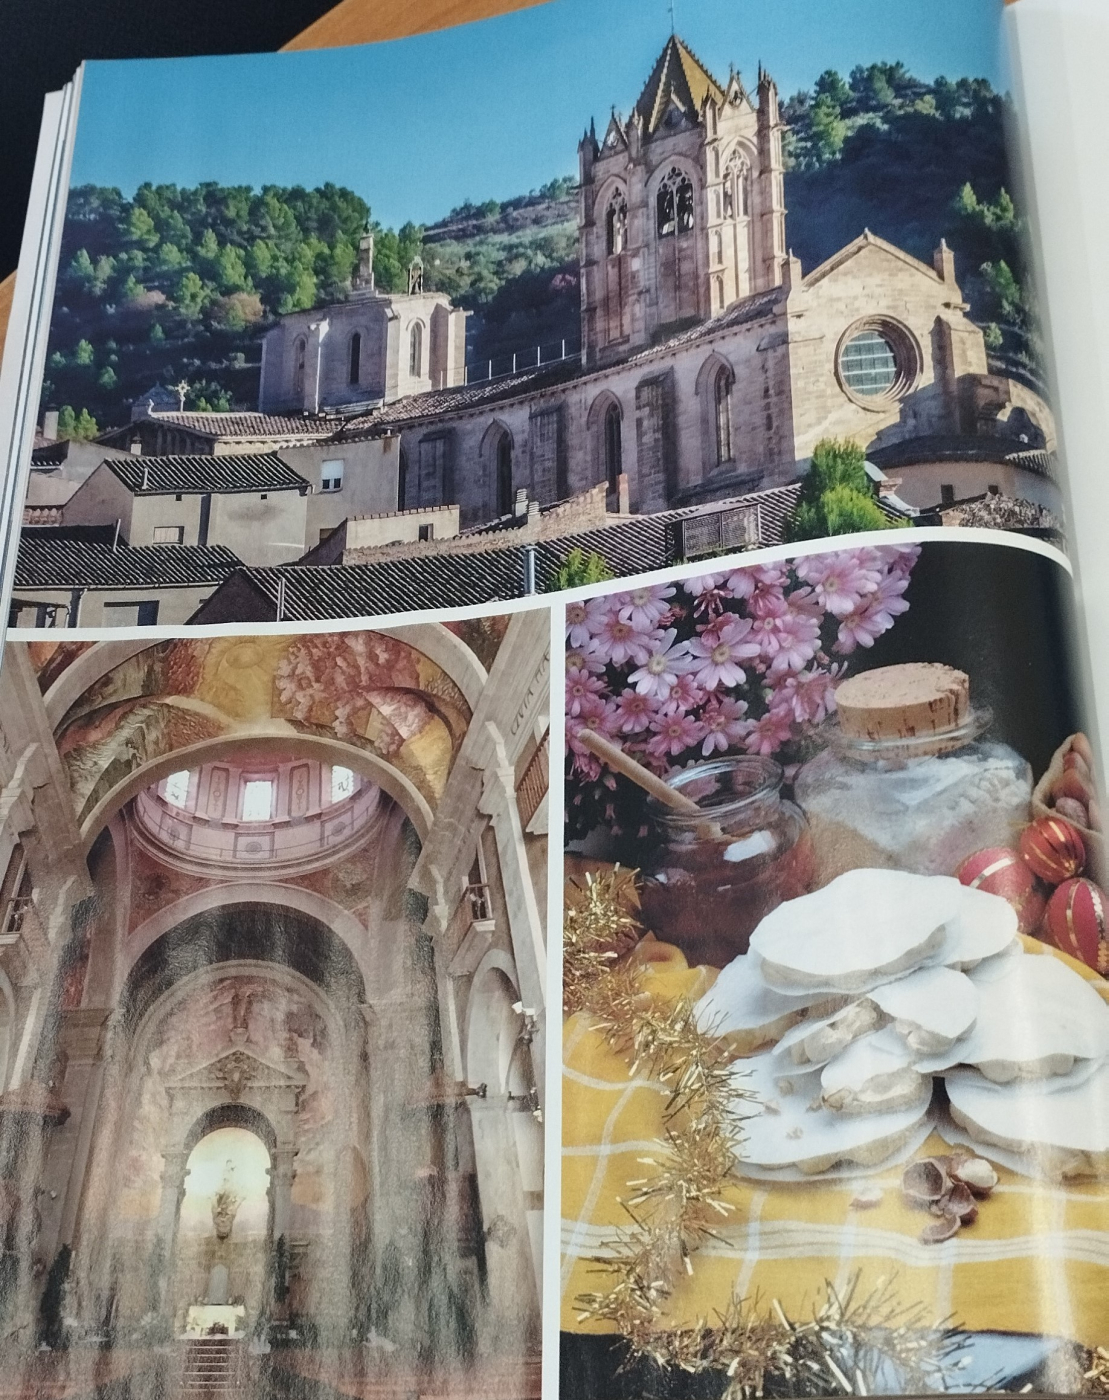 La revista Viajar de desembre dedica un interessant reportatge a l’Urgell.